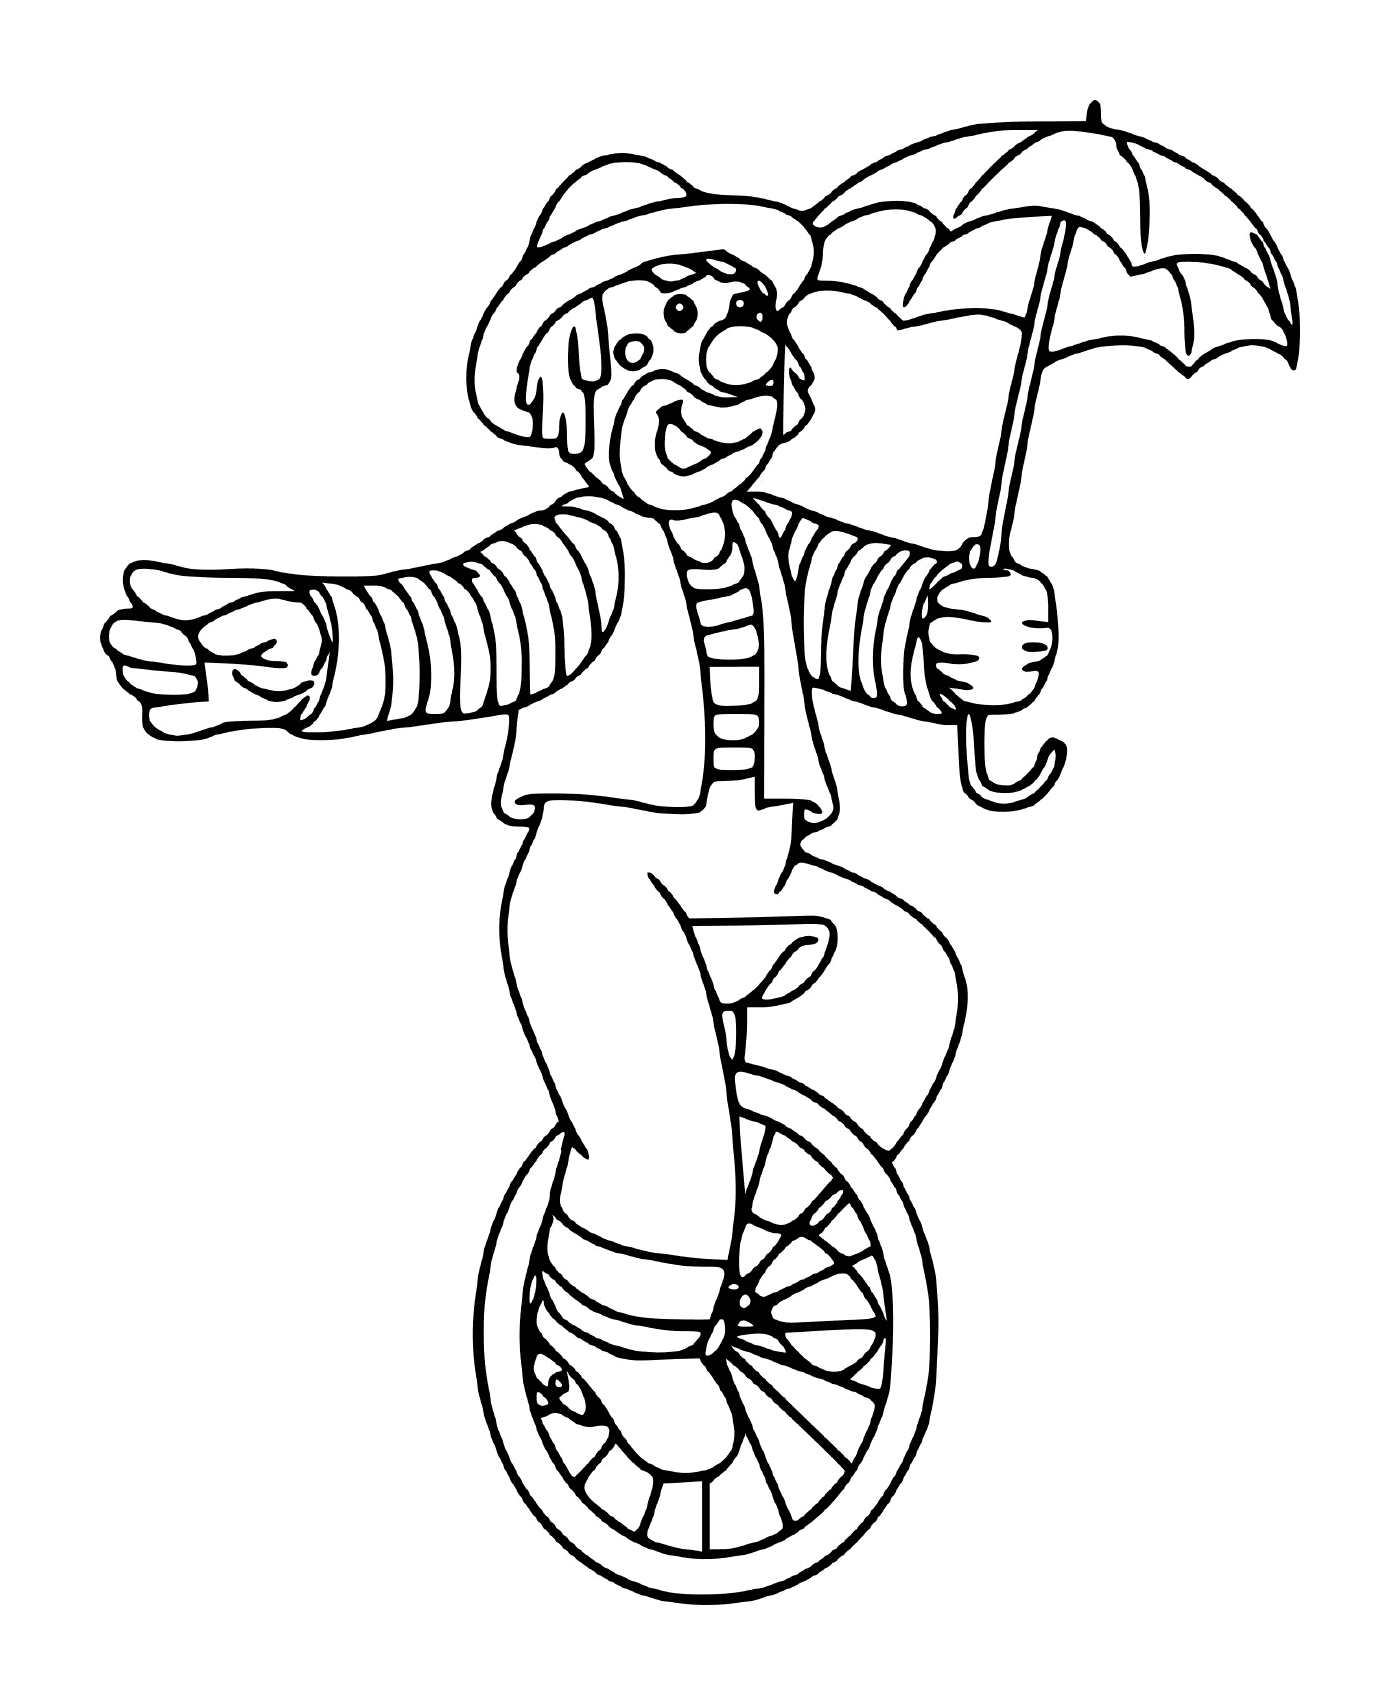  Clown da circo bilanciato su una ruota con un ombrello 